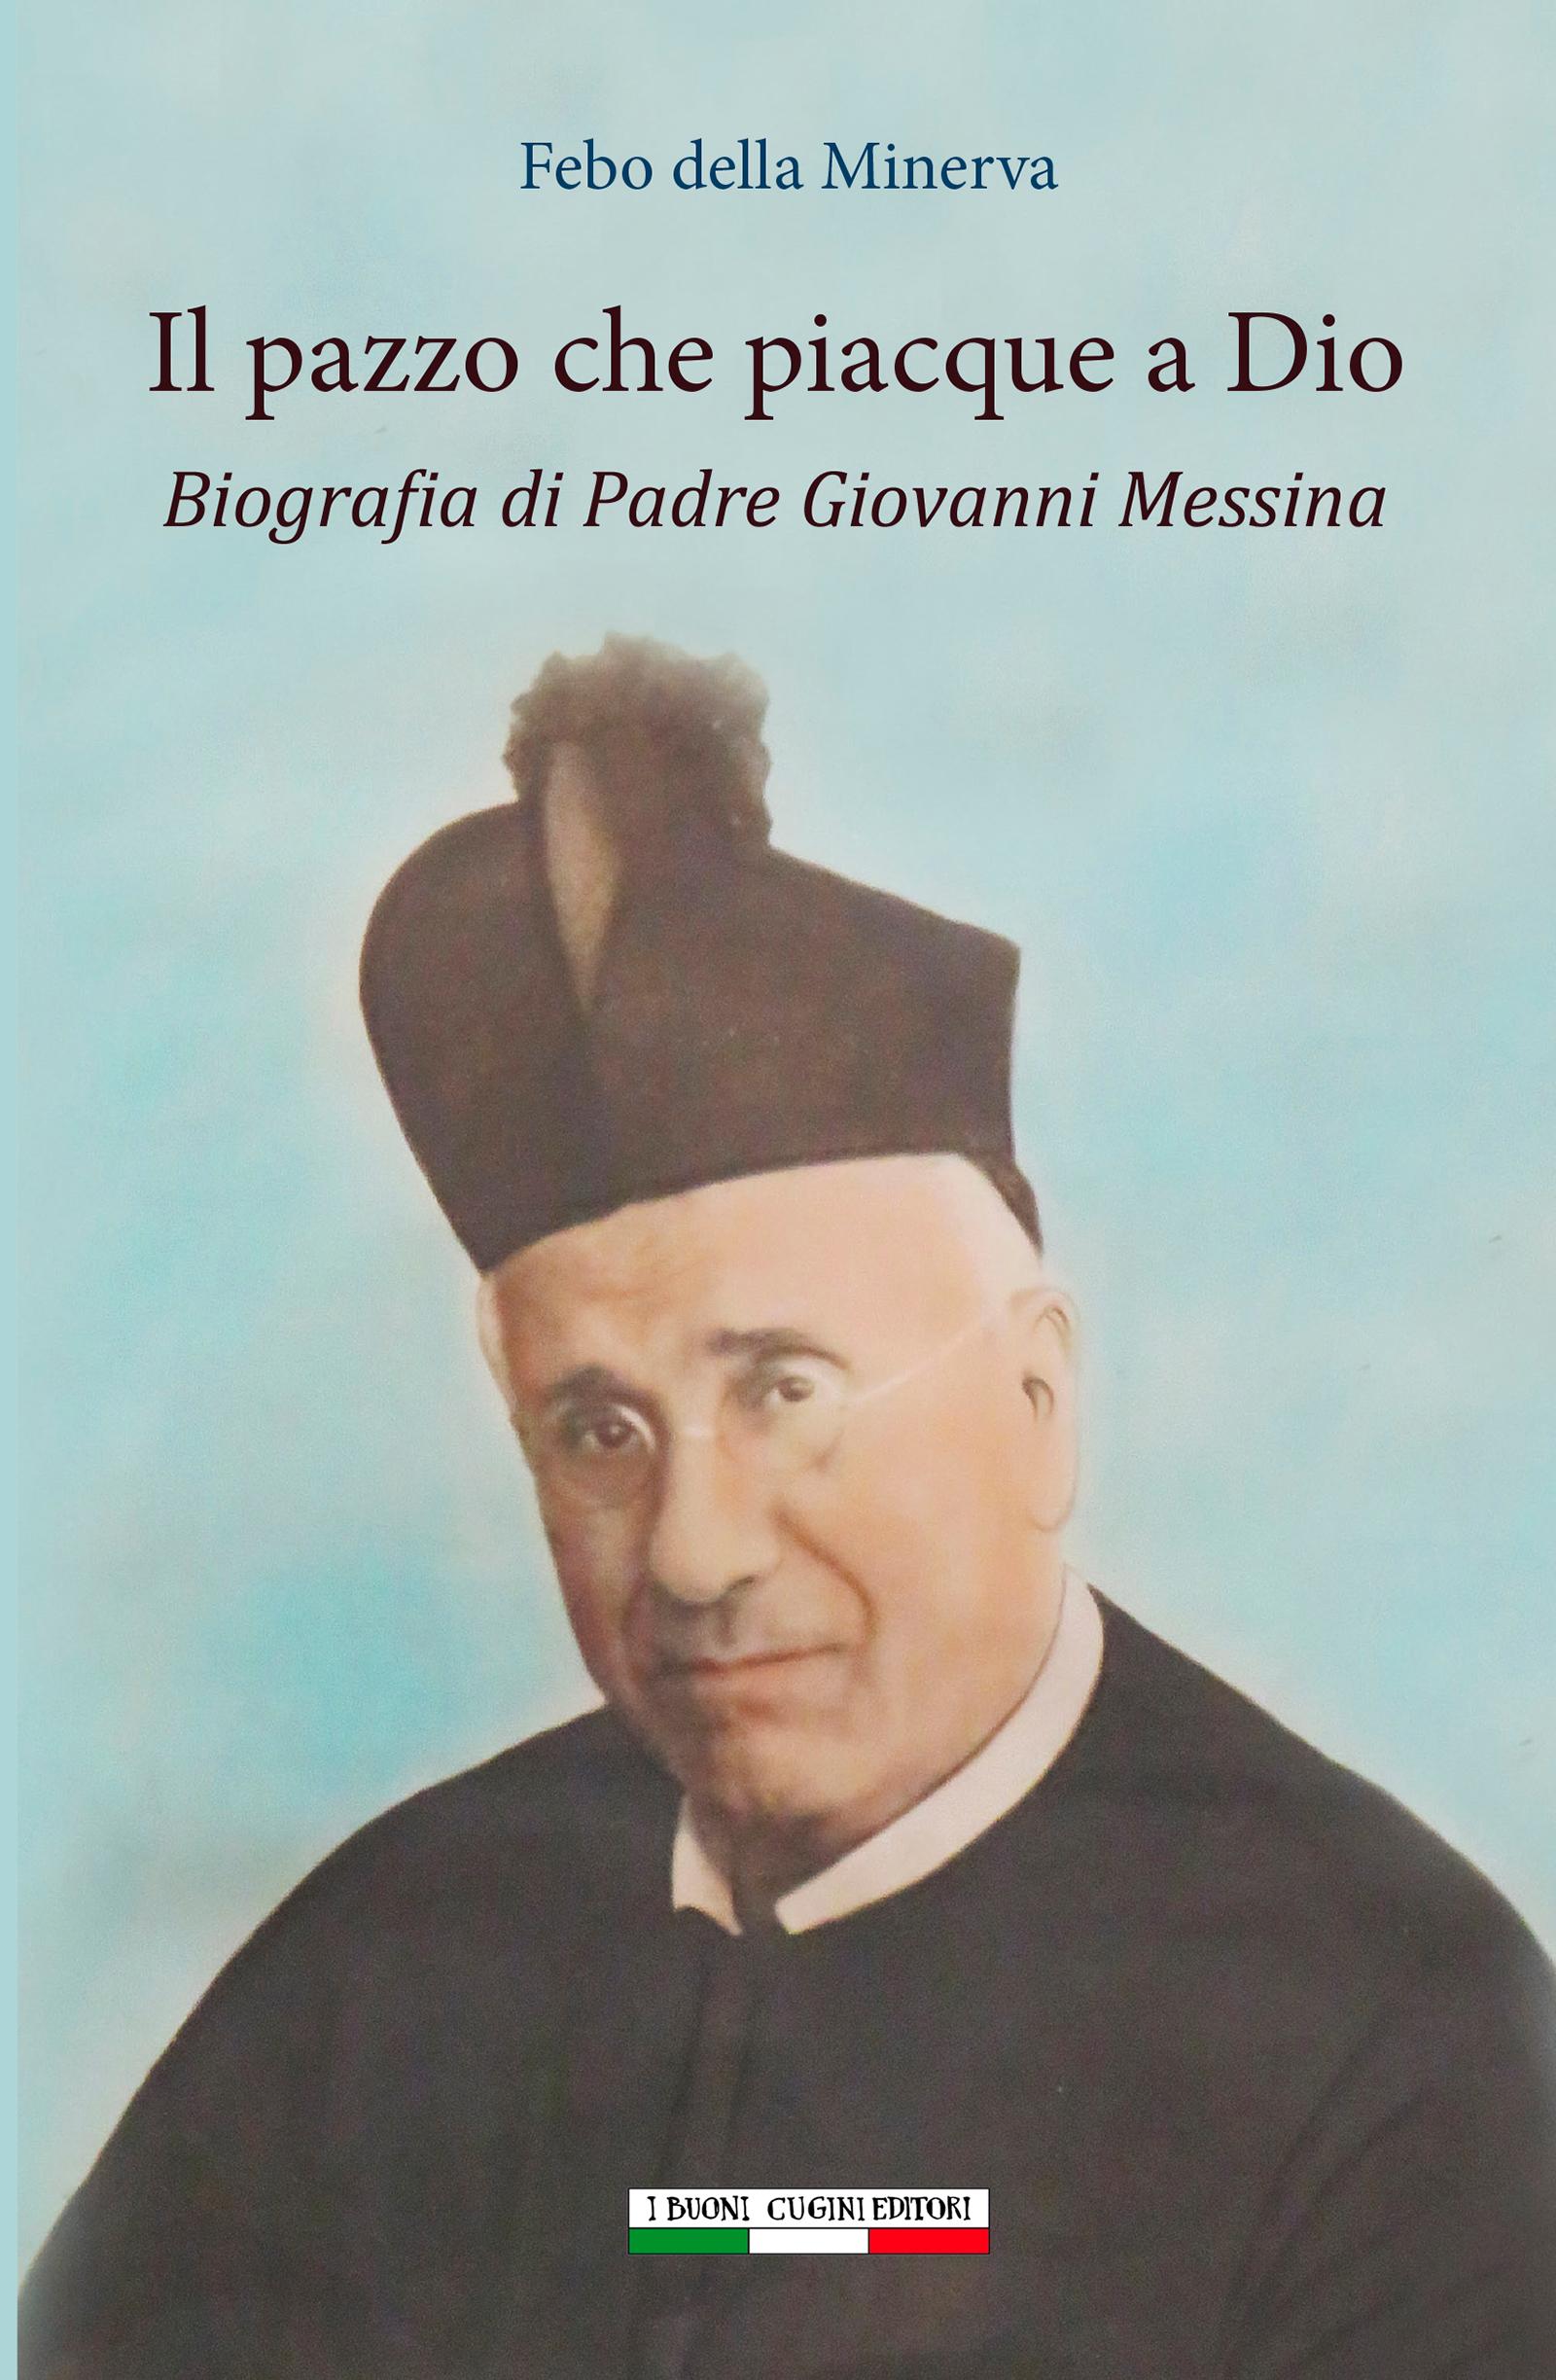 Febo Della Minerva: Il pazzo che piacque a Dio. Biografia di padre Giovanni Messina